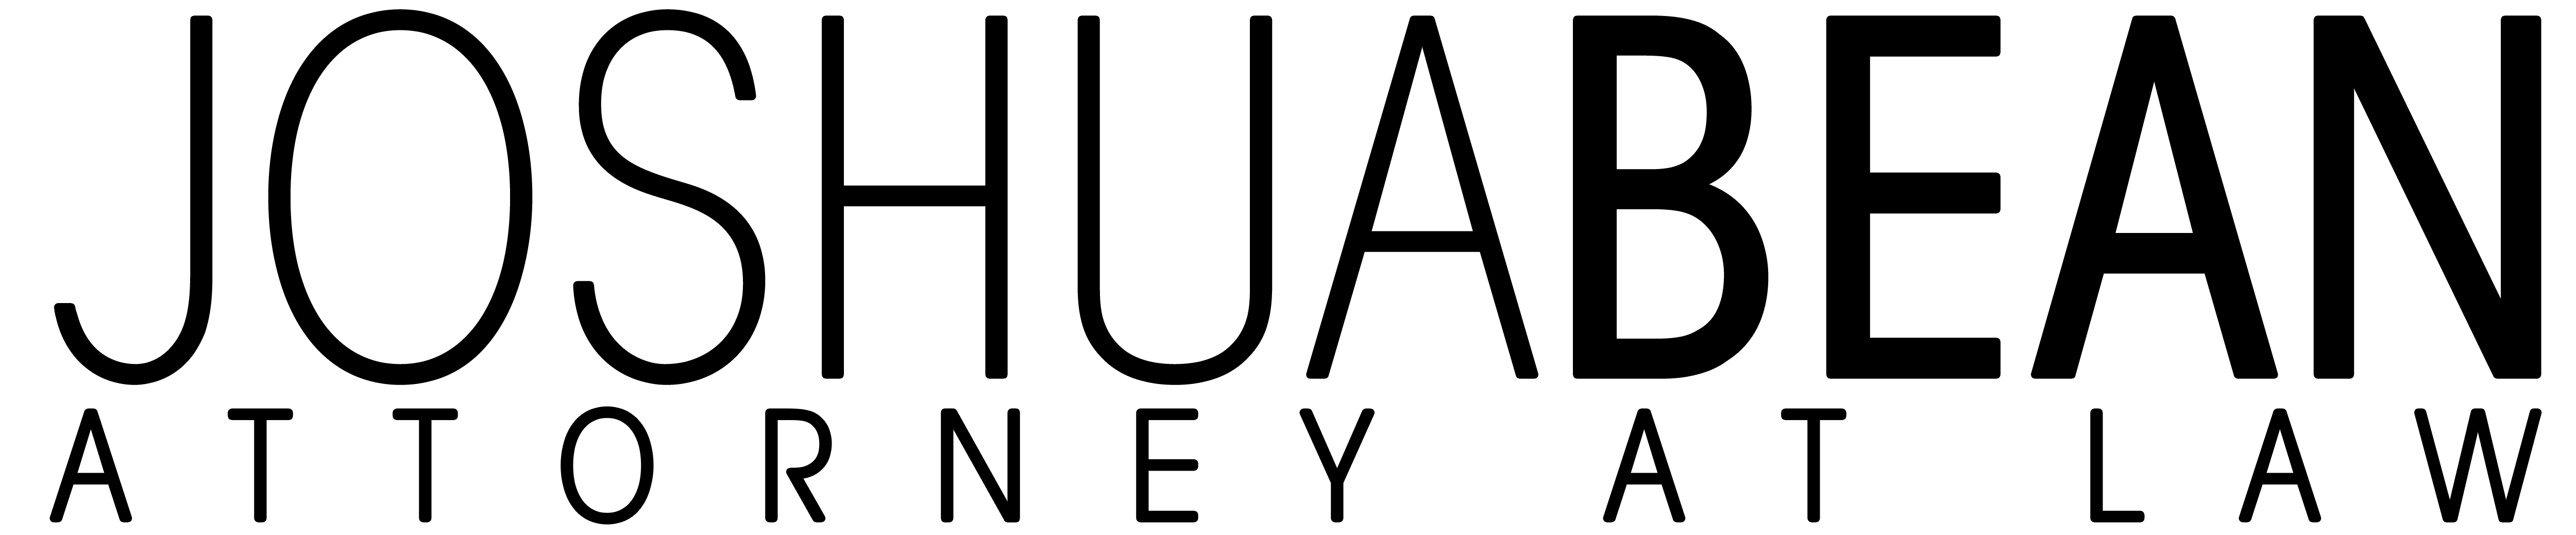 alternate josh bean logo in white font